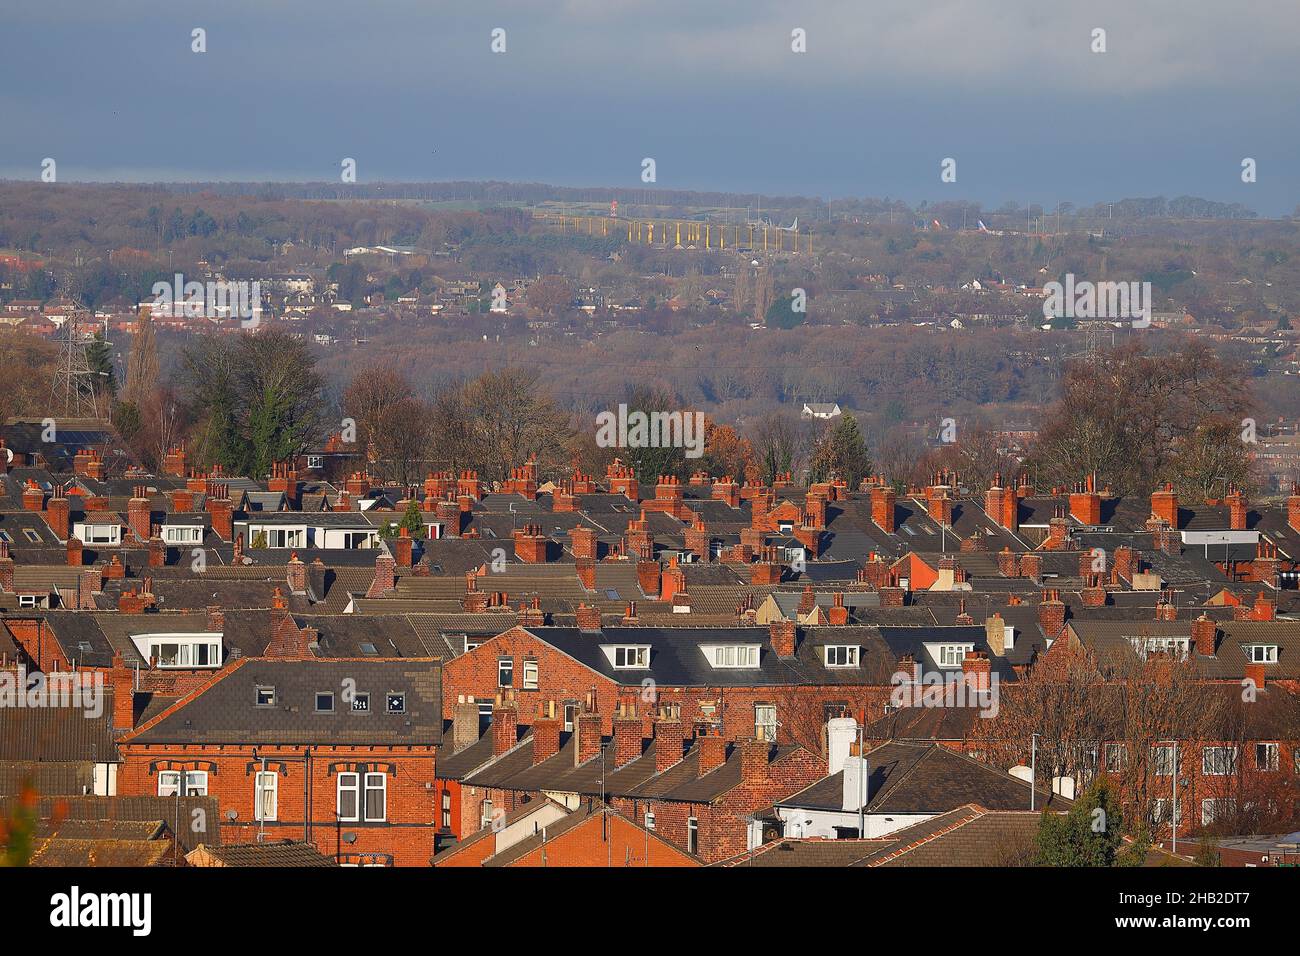 Blick über die Dächer von Horsforth zum Flughafen Leeds Bradford. Das gelbe instrumentale Landesystem ist am Horizont zu sehen. Stockfoto